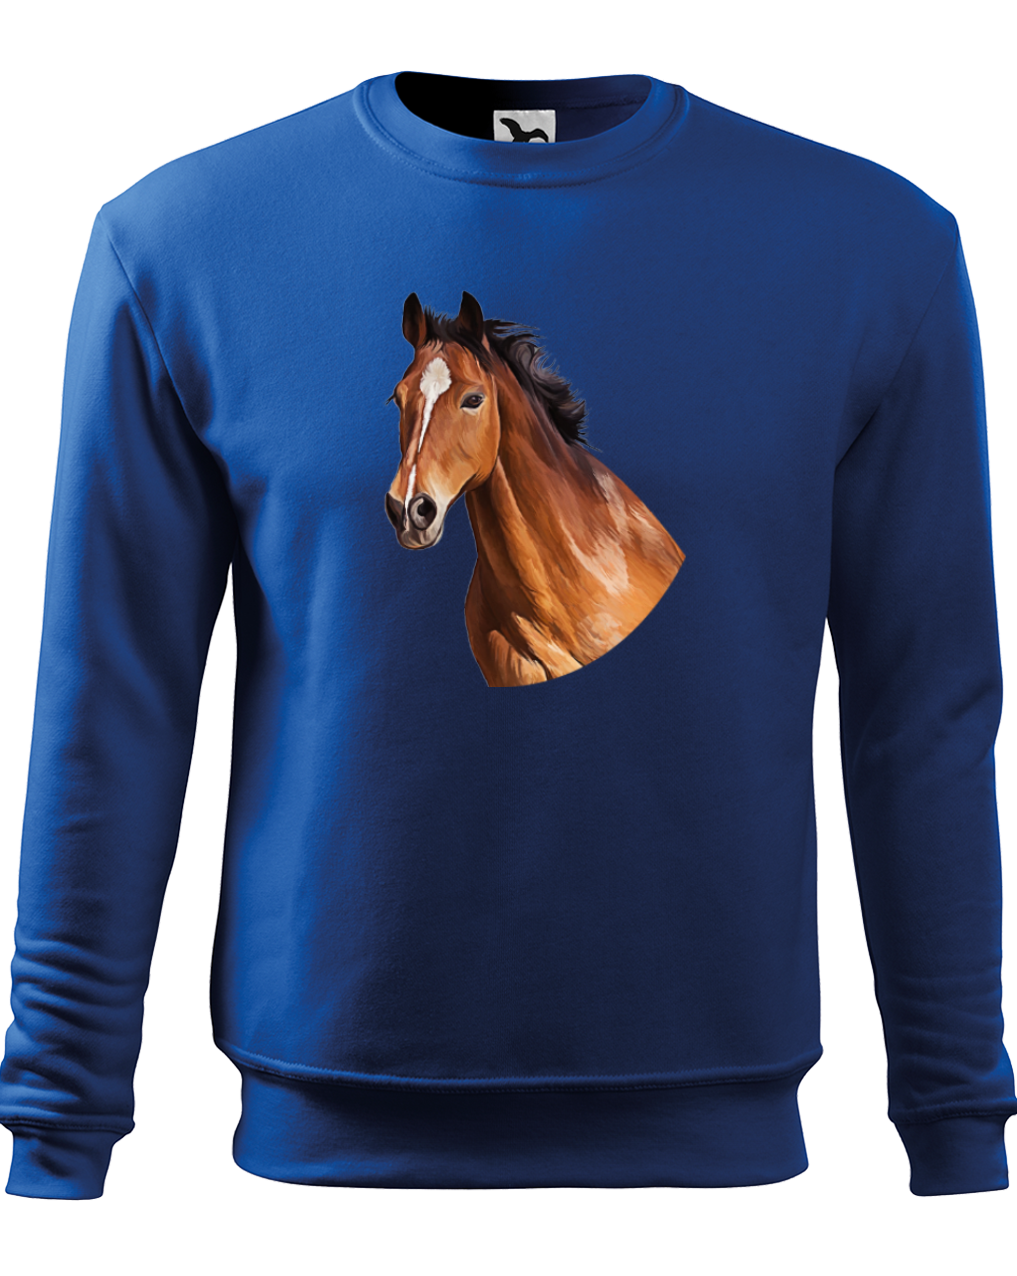 Mikina s koněm - Hnědák Velikost: M, Barva: Královská modrá